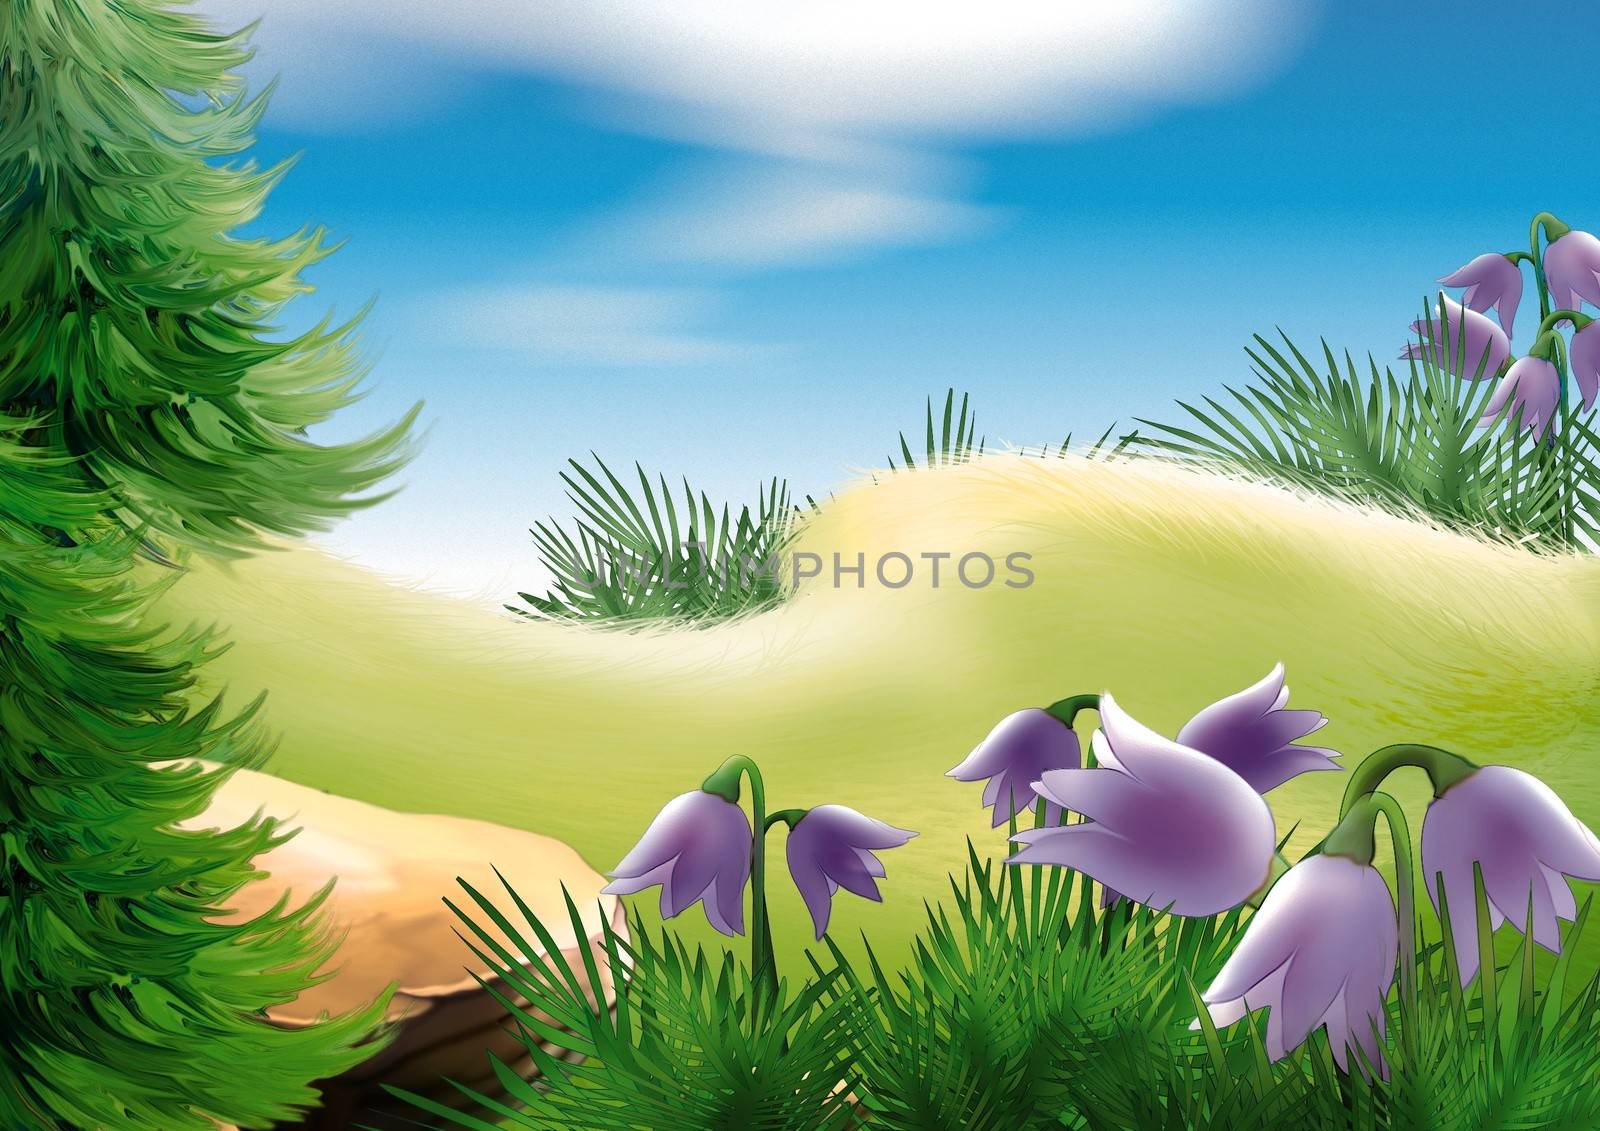 Forest Glade - Background Illustration